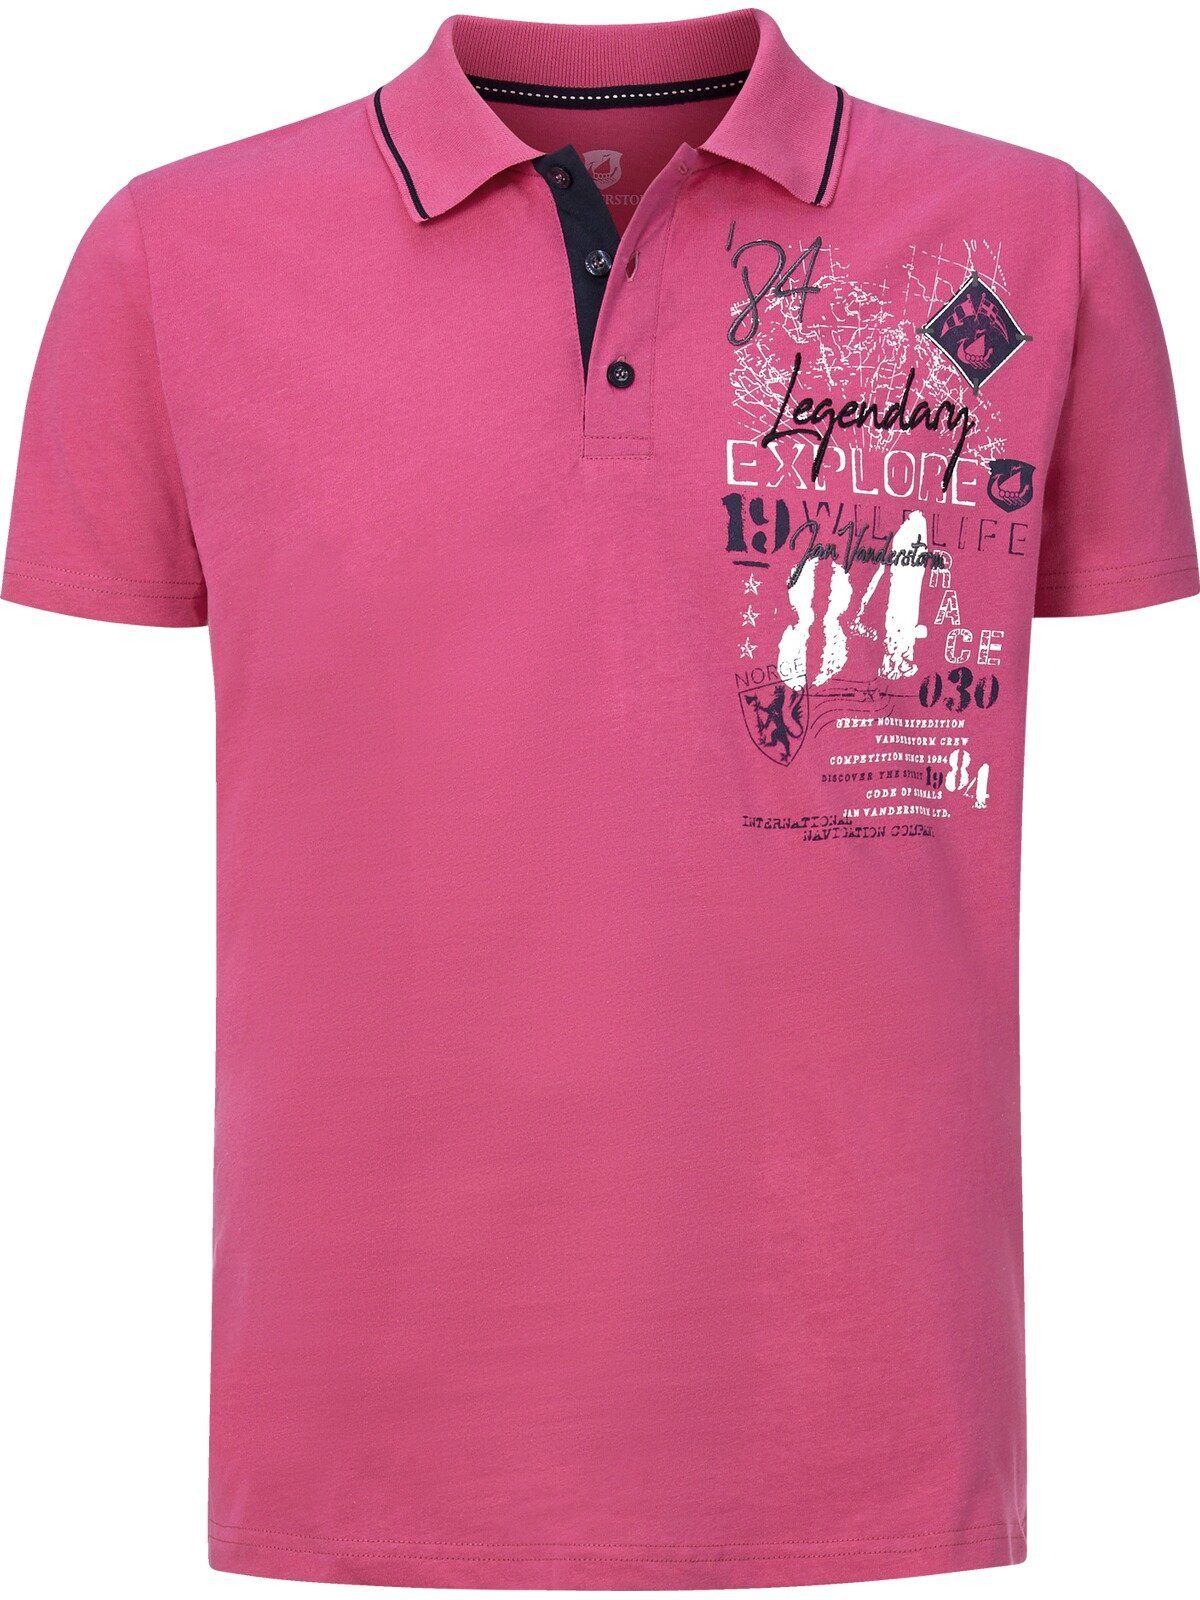 Baumwolle Vanderstorm aus Jan NANFRED hochwertiger Poloshirt pink